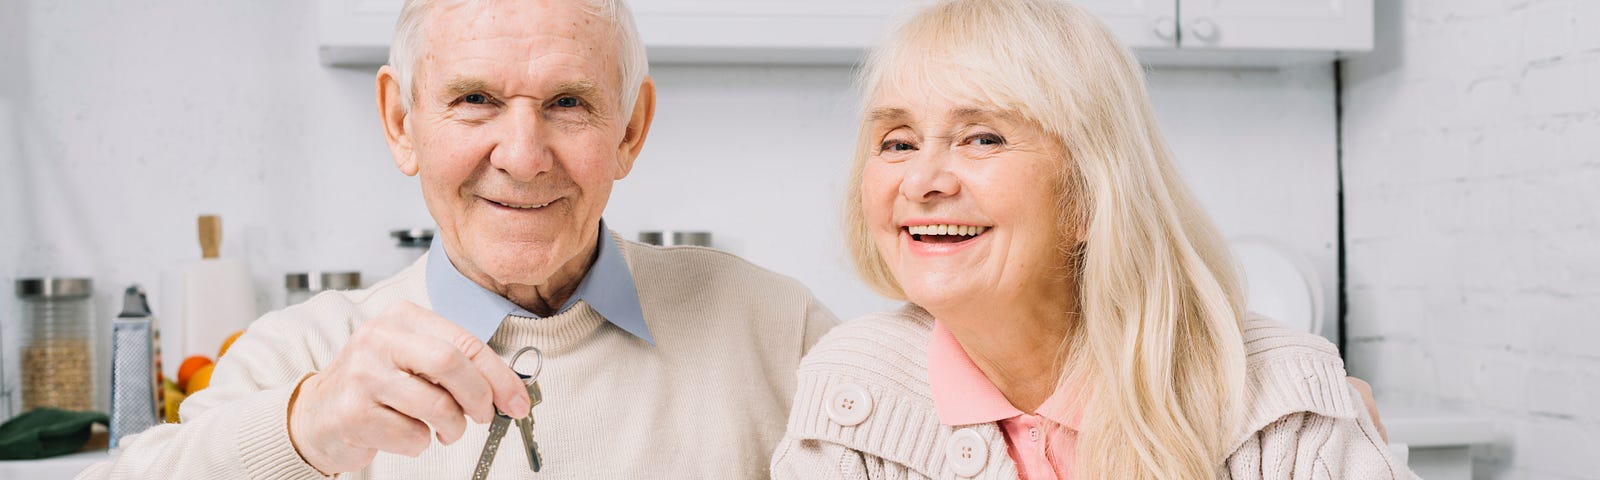 Senior elderly couple holding set of keys